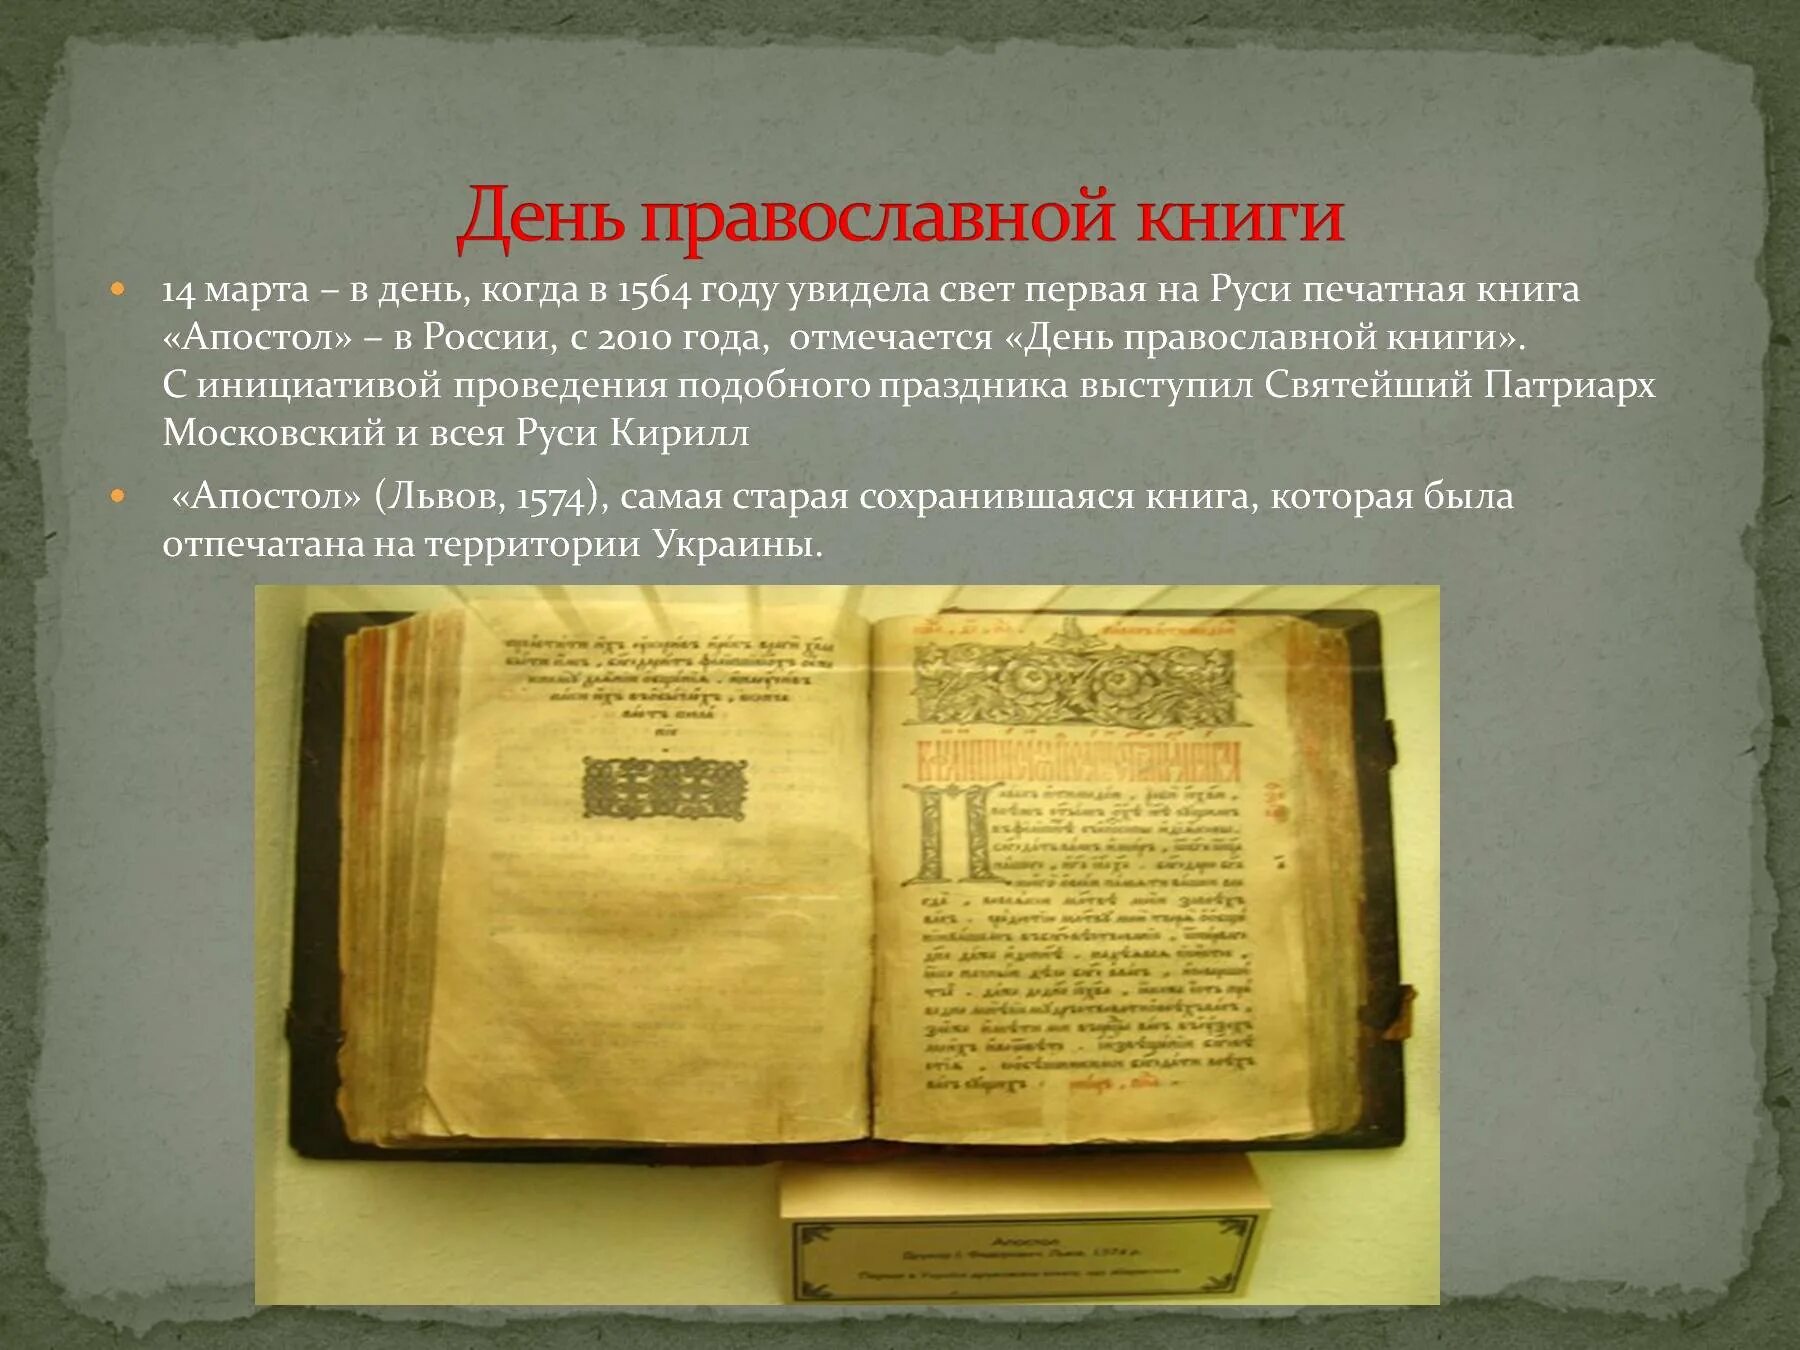 Какие были первые книги на руси. Первая печатная книга на Руси 1564. Апостол 1564 первая печатная книга. Первая книга на Руси Апостол. Книга Апостол 1564 года.